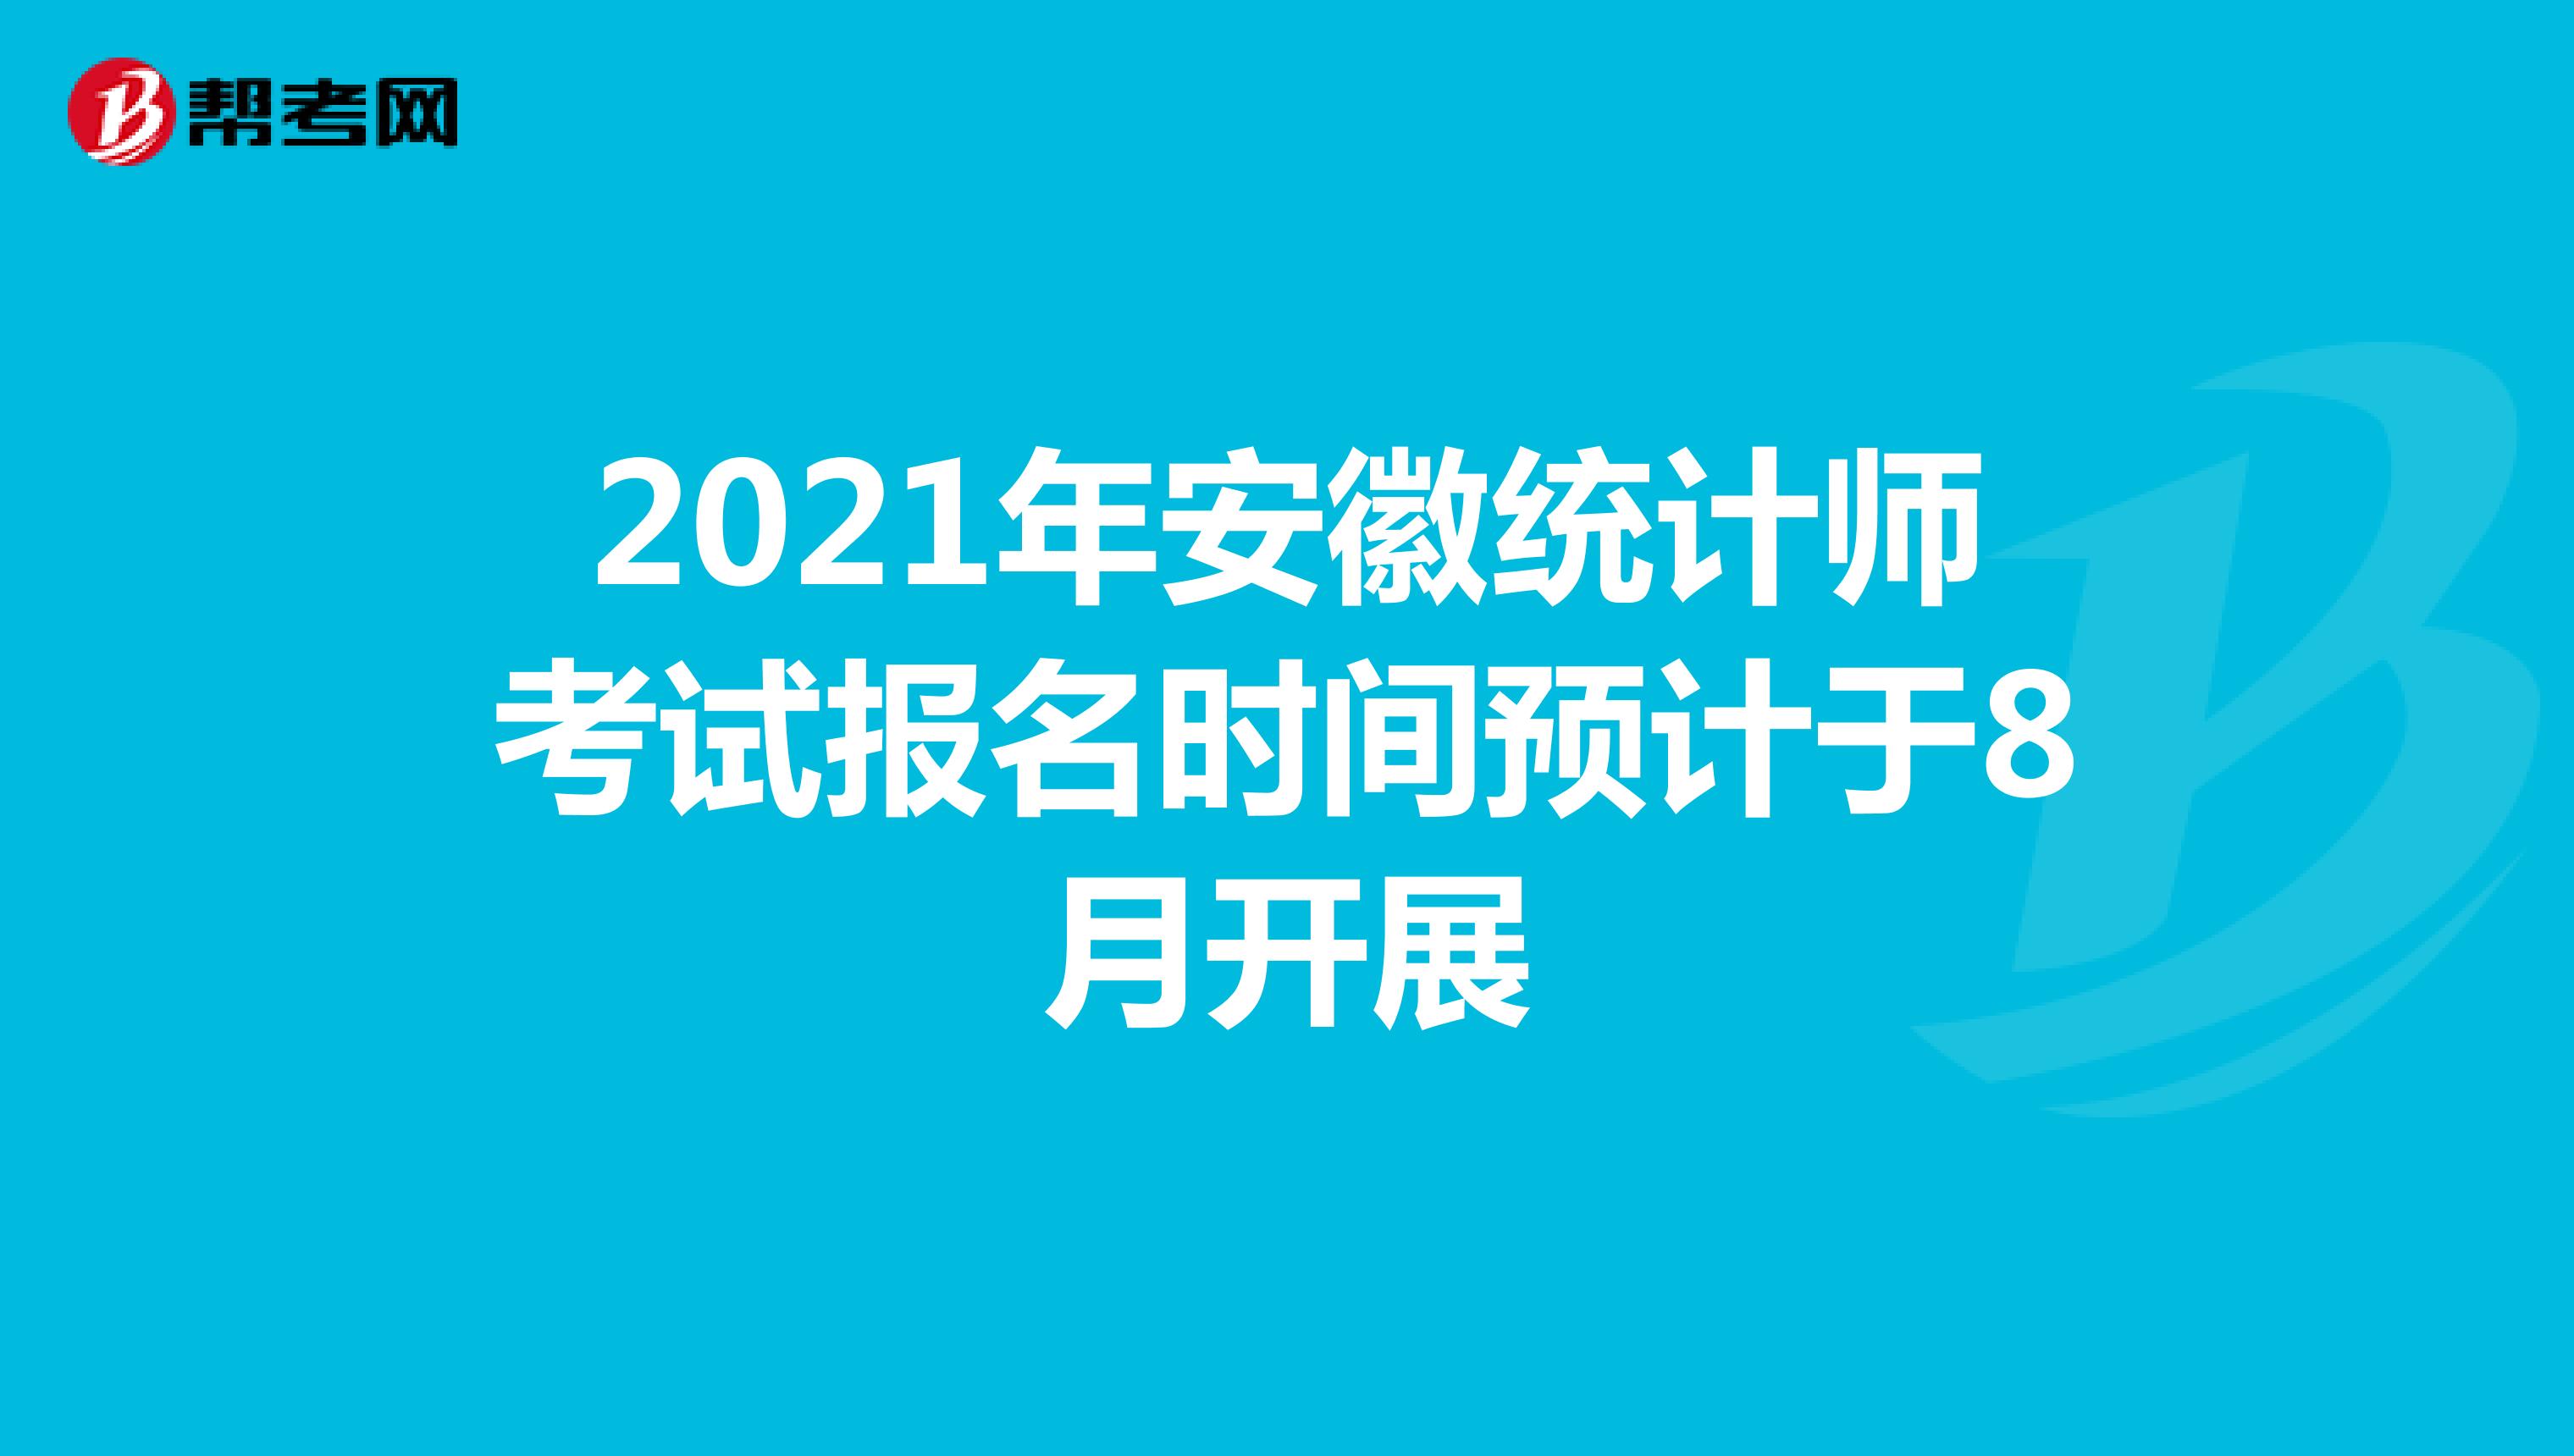 2021年安徽统计师考试报名时间预计于8月开展